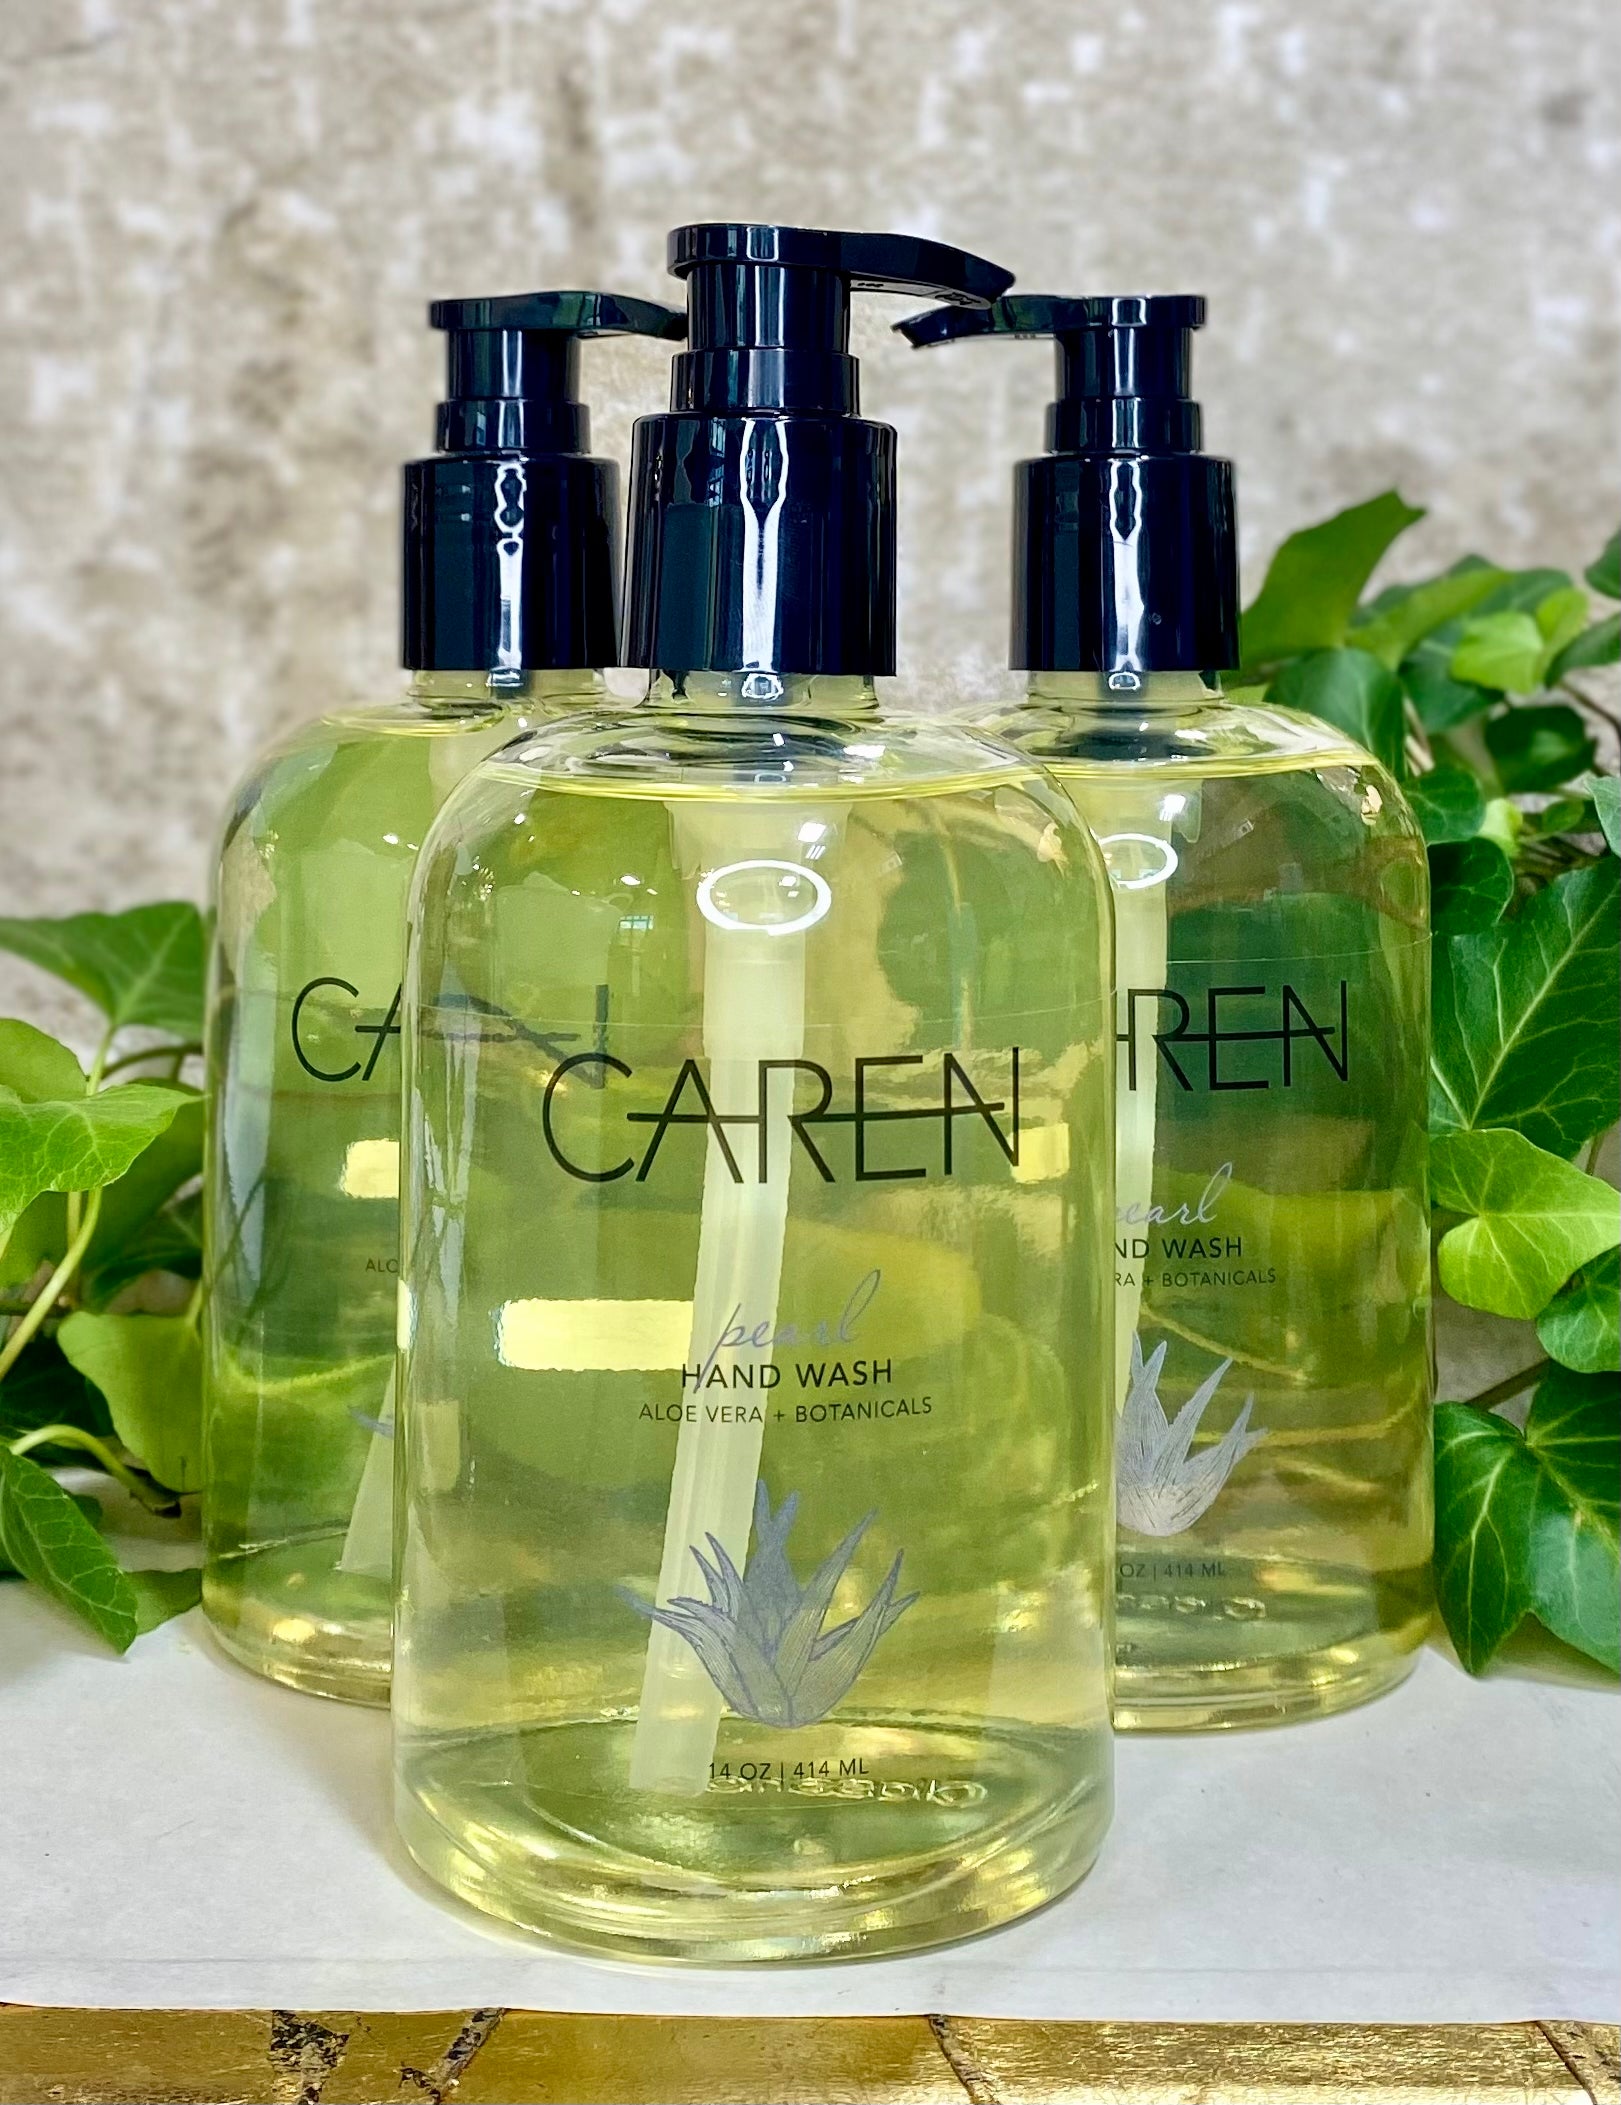 Caren “navy” hand soap